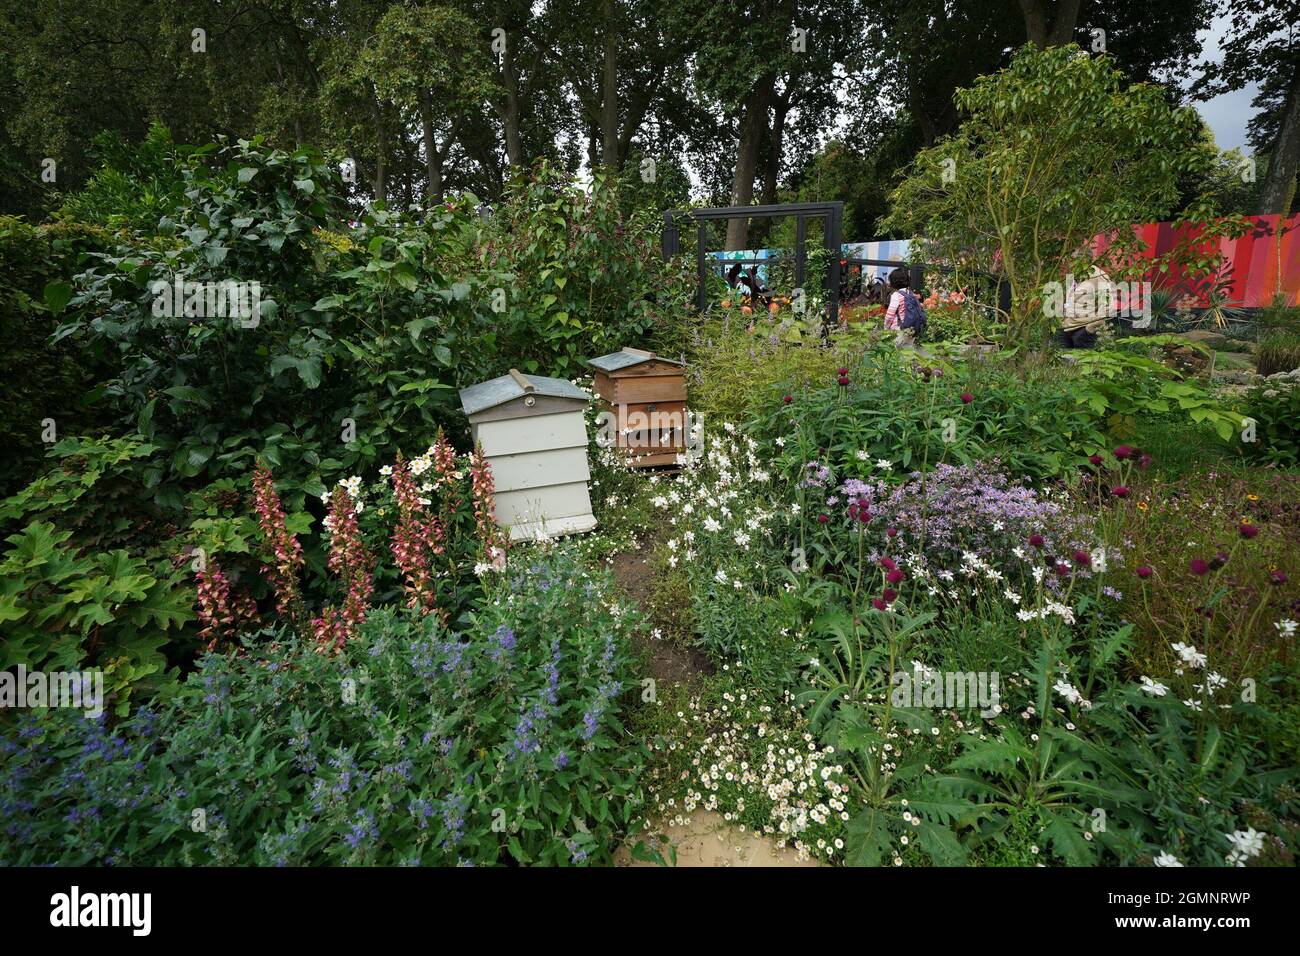 Le jardin de la RHS Cop26, conçu pour la prochaine conférence sur le climat, lors du salon des fleurs de la RHS Chelsea, au Royal Hospital Chelsea, à Londres. Date de la photo: Lundi 20 septembre 2021. Banque D'Images